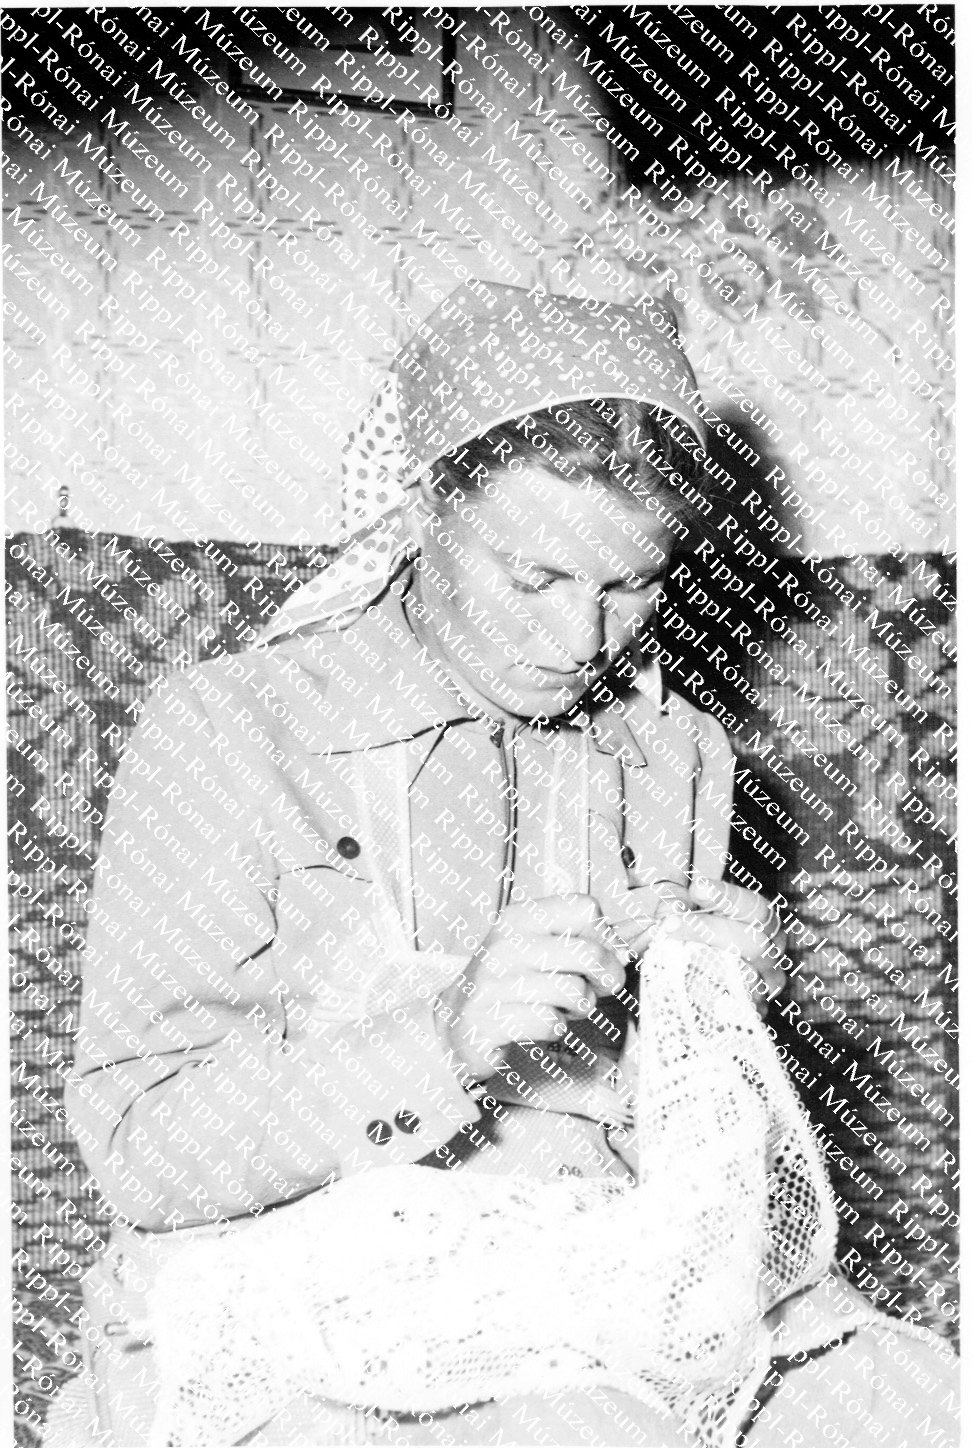 Boda Anna göllei lány esténként szorgalmasan gyarapítja a kelengyéjét (Rippl-Rónai Múzeum CC BY-NC-SA)